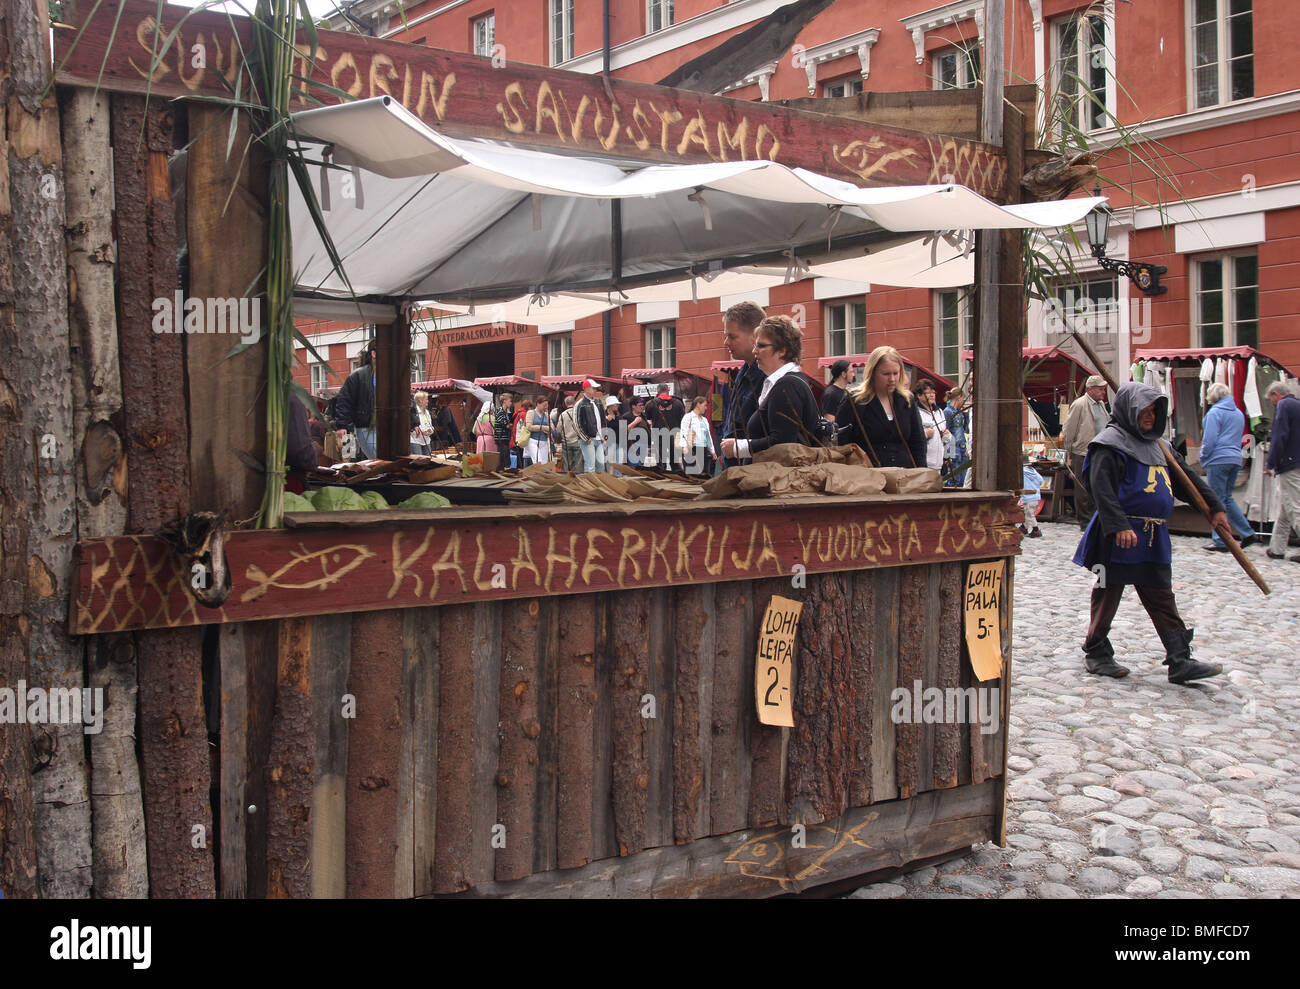 Marché médiéval annuel à Turku, Finlande STT dans le marché médiéval et personne dans la robe médiévale. Banque D'Images